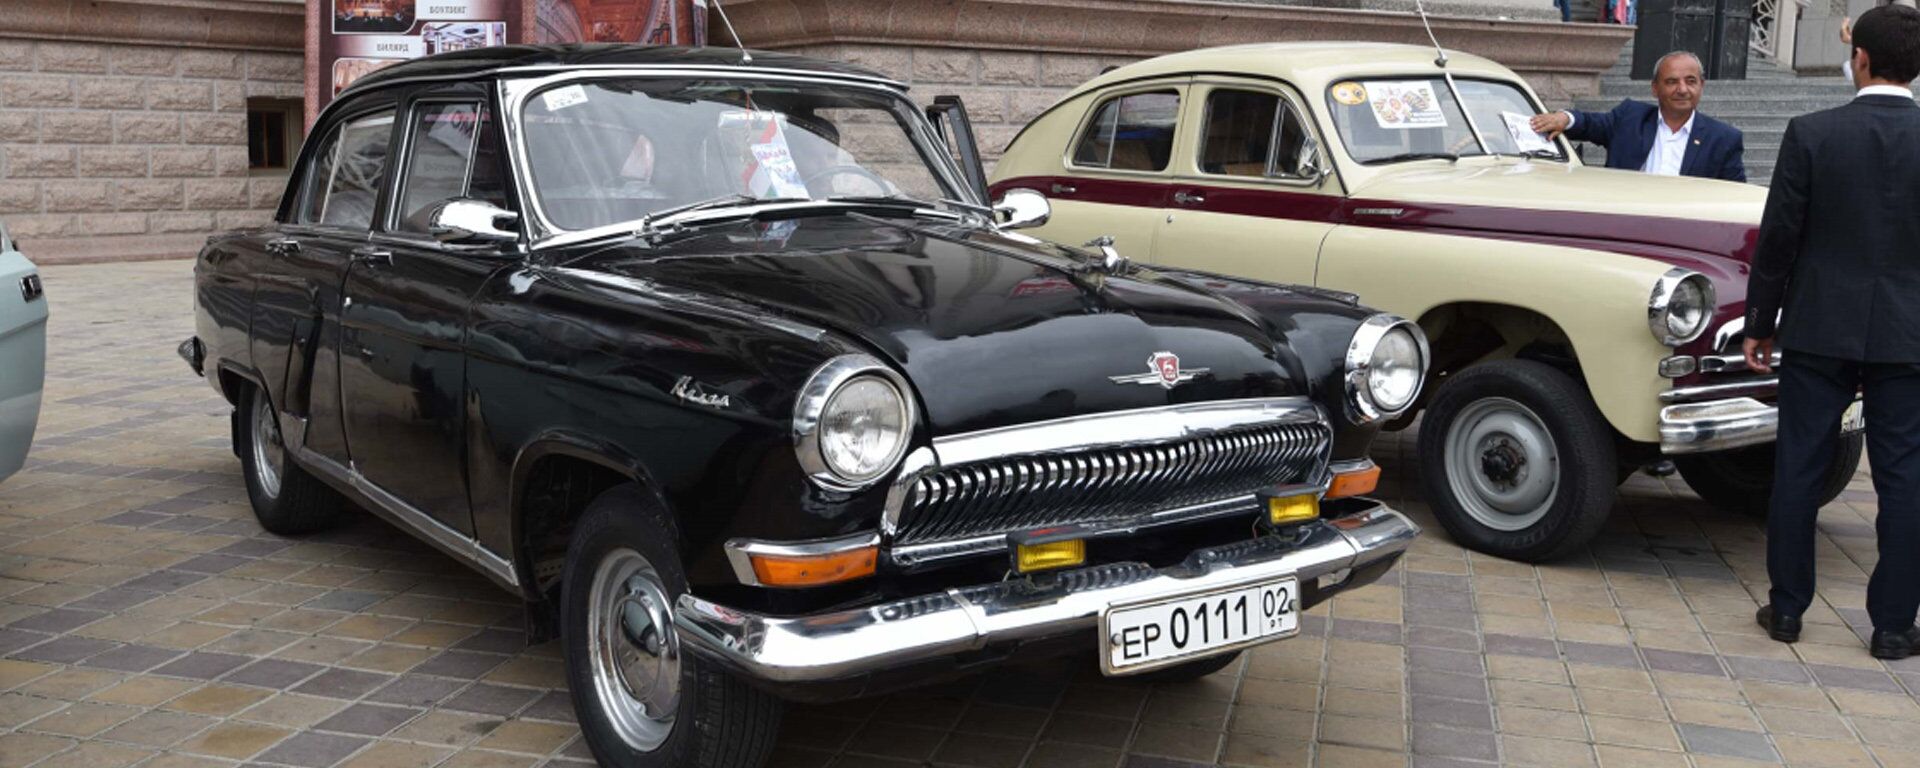 Ретро-шик: в Душанбе прошла выставка старинных автомобилей - Sputnik Таджикистан, 1920, 09.05.2017